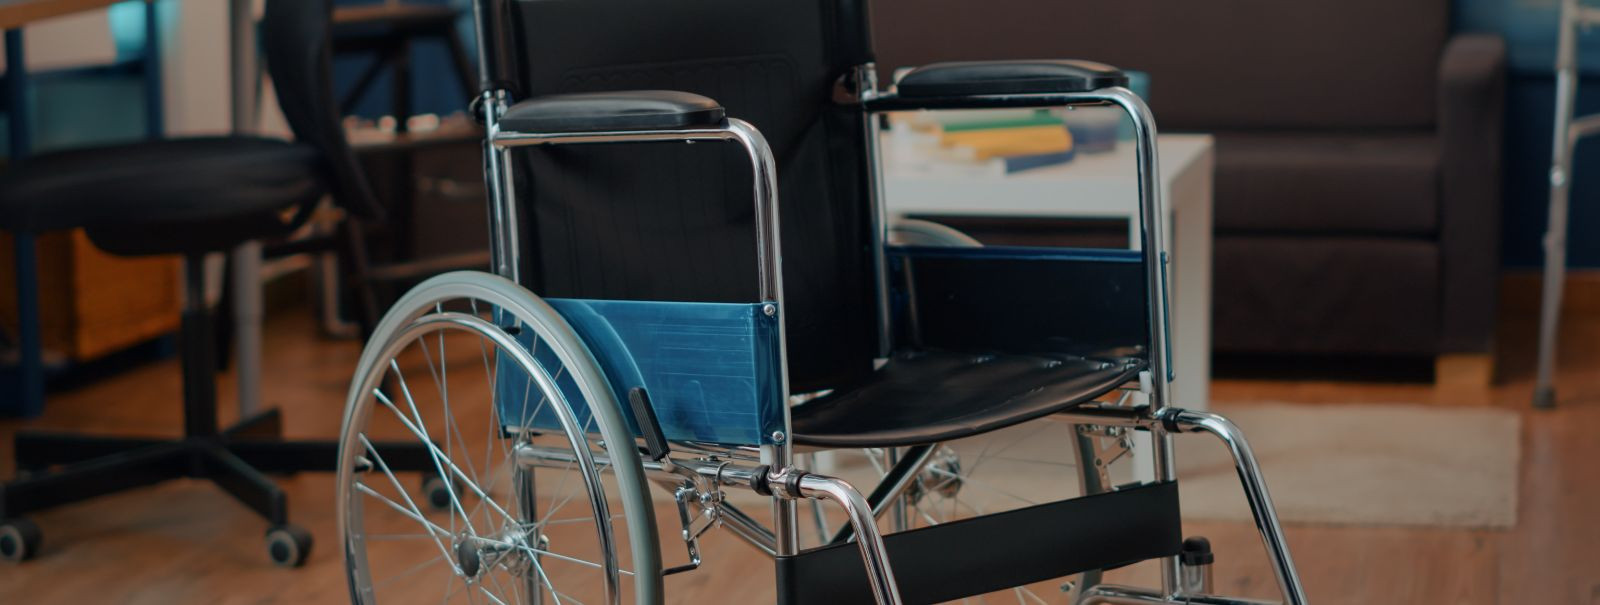 Õige ratastooli valimine algab kasutaja liikumisvajaduste põhjaliku hindamisega. Kaaluge iseseisvuse taset ja igapäevaseid tegevusi, mida ratastool peab toetama